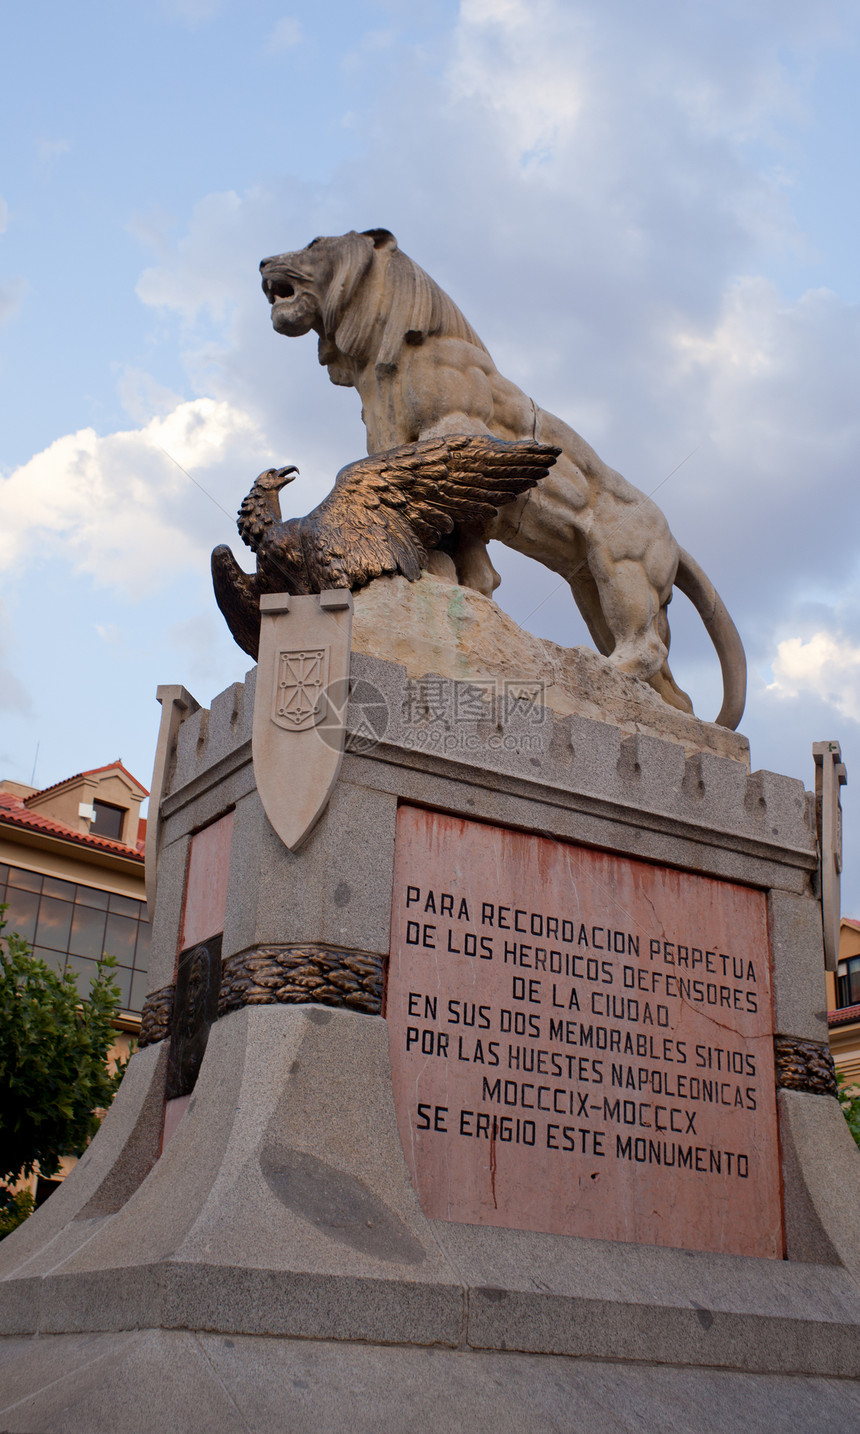 英雄的纪念碑艺术狮子雕像雕塑图片